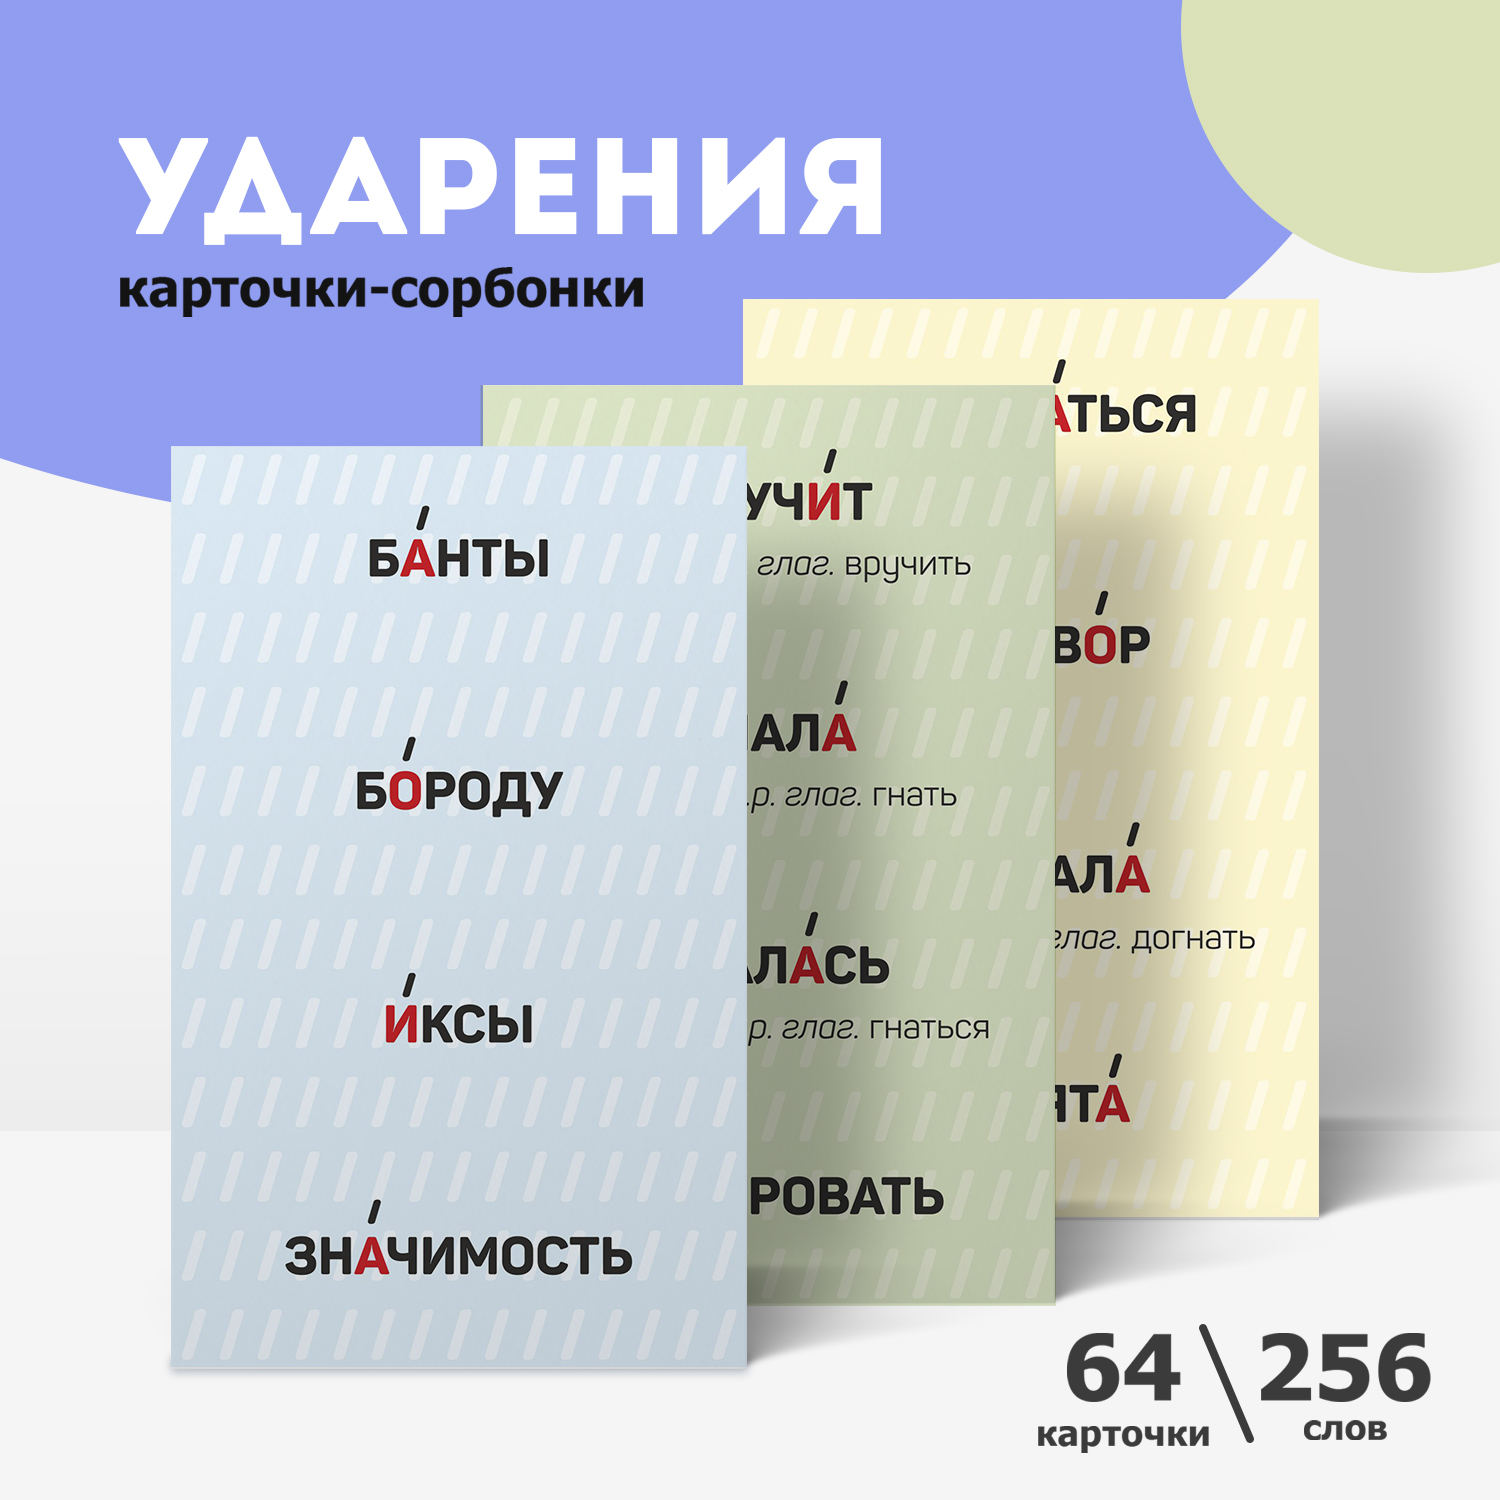 Обучающие карточки Выручалкин Карточки-сорбонки Русский язык. Ударения, 64 шт, 256 слов